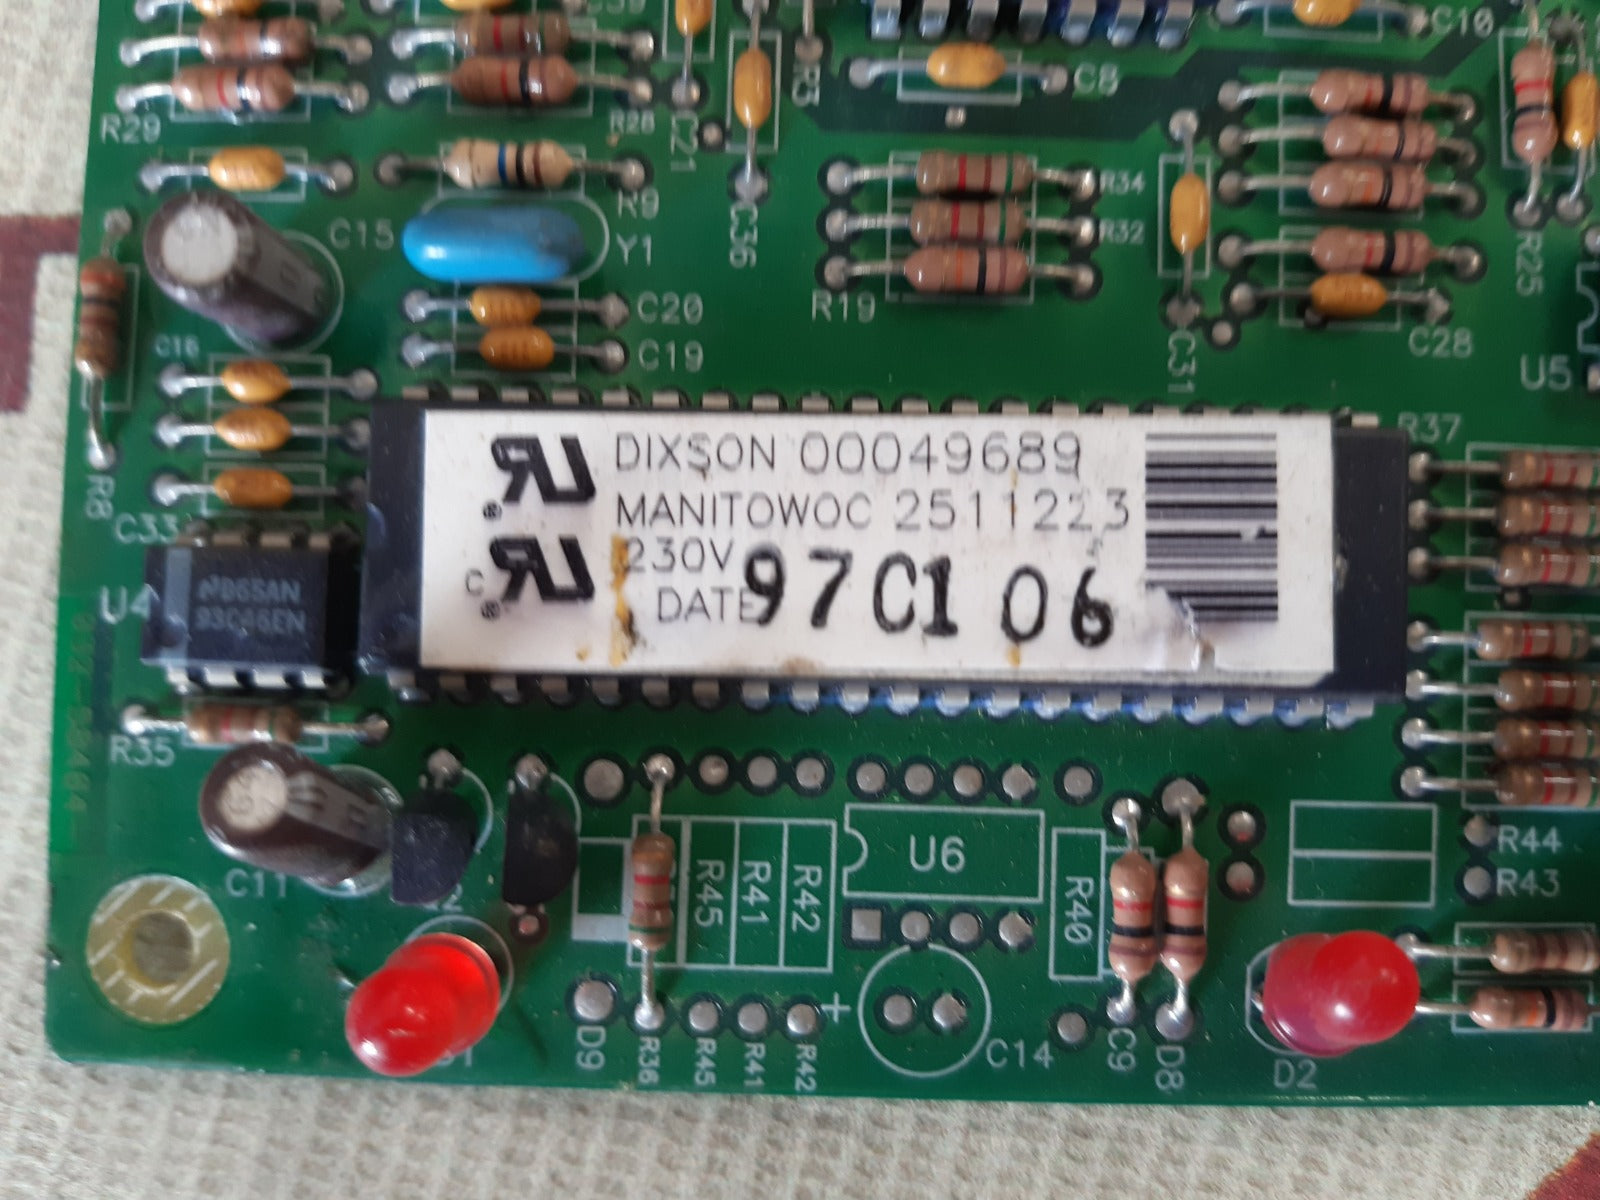 Manitowoc 2511223 /dixson 00049689 control board